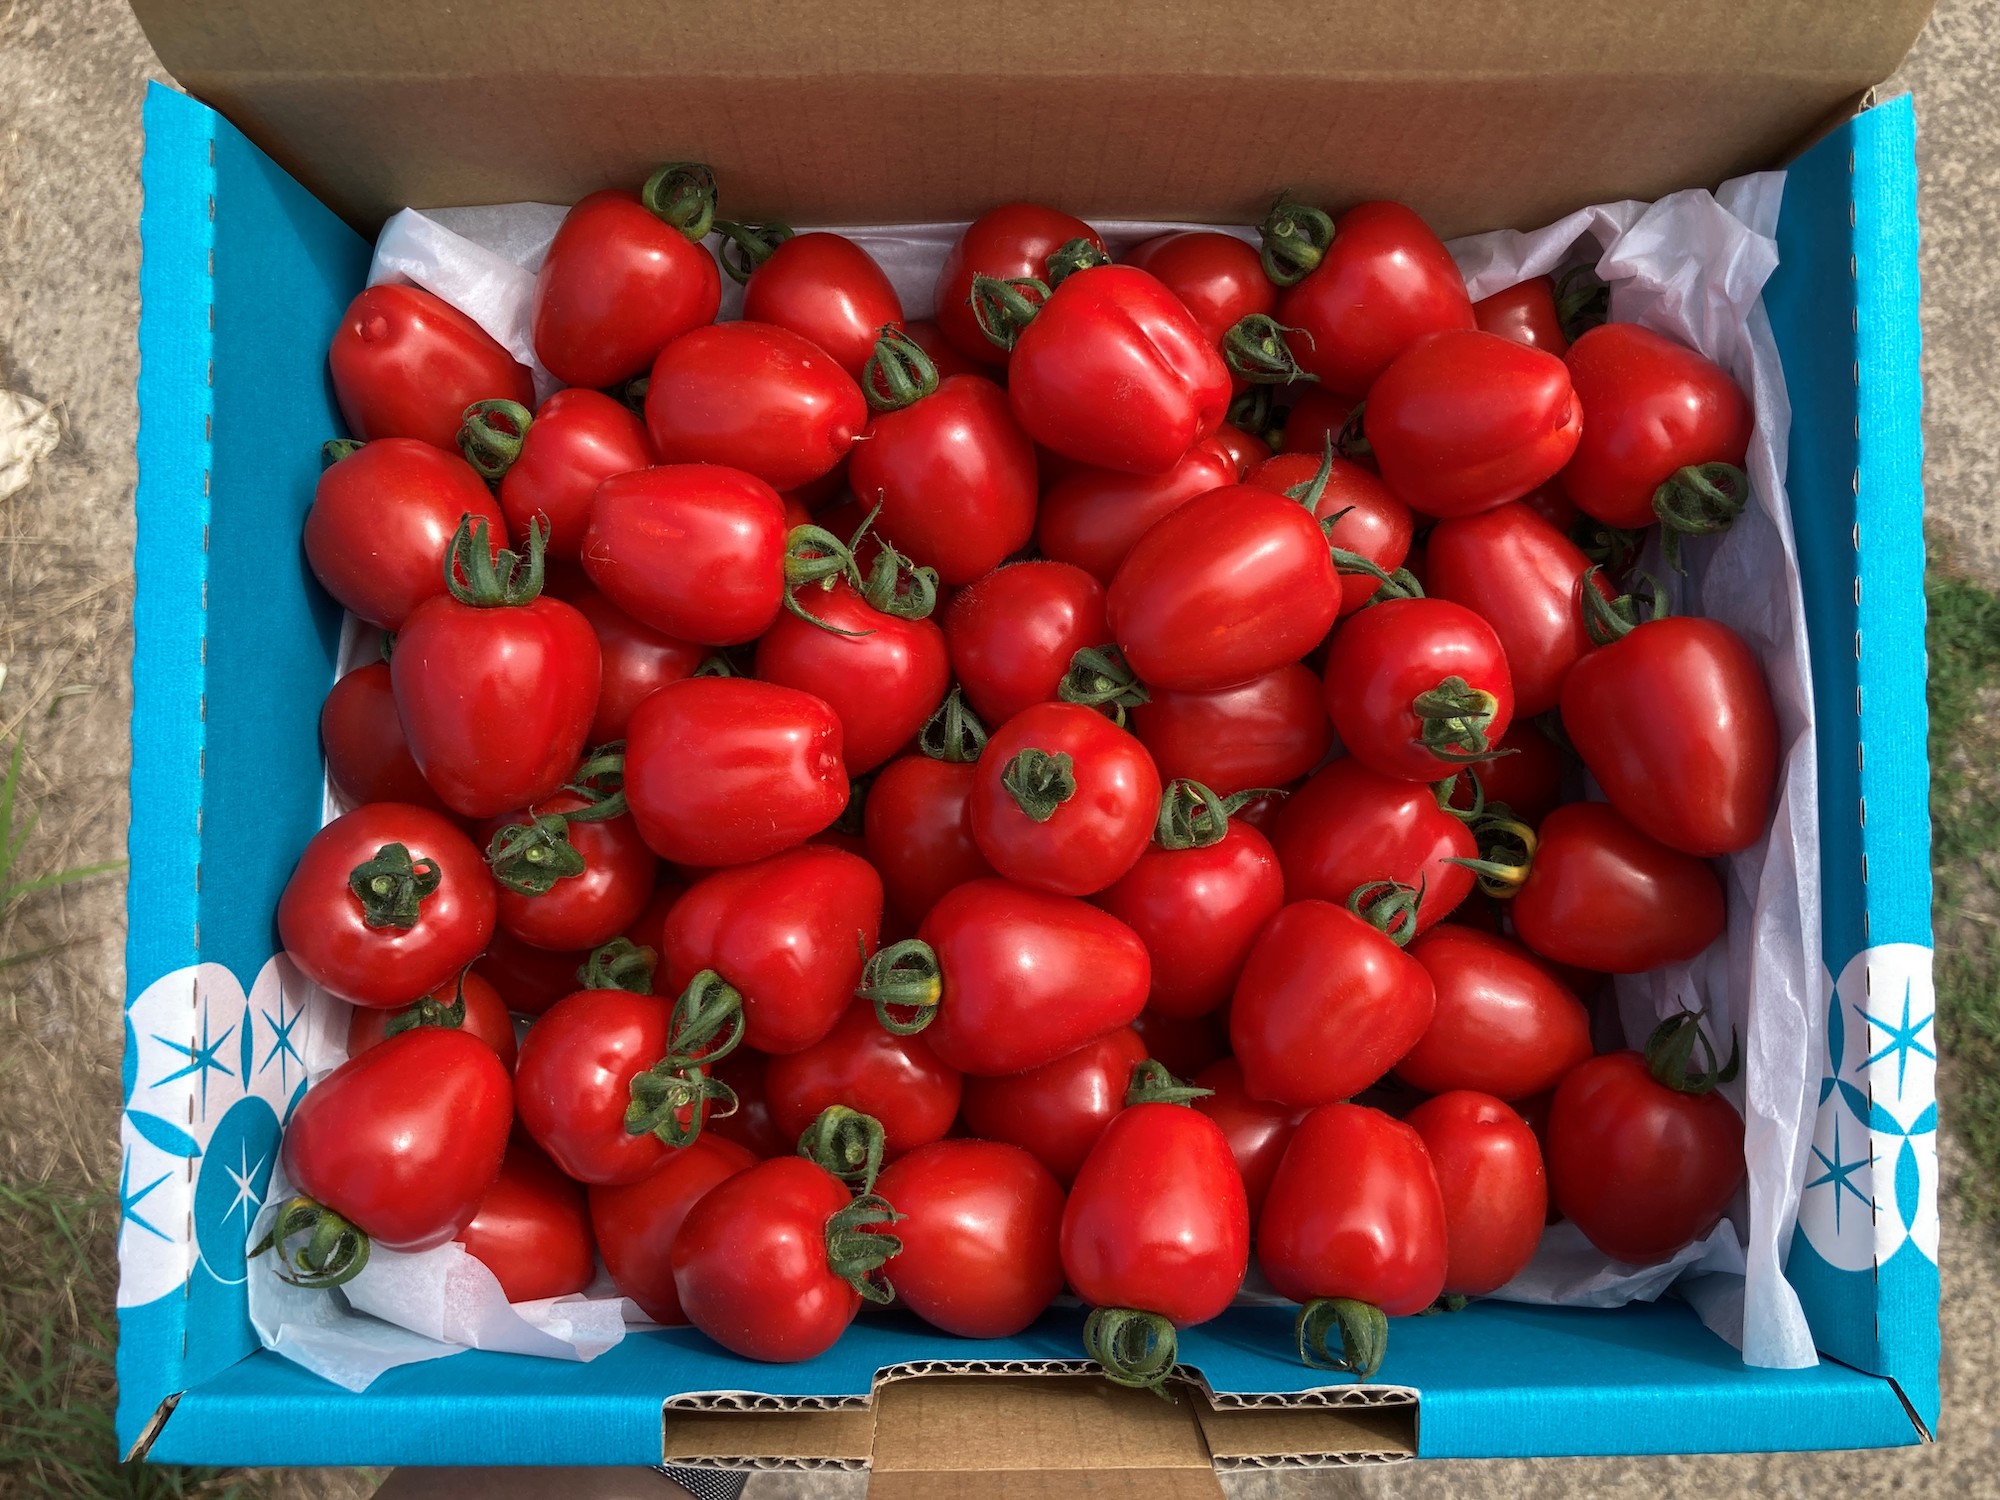 〔予約受付中〕しおかぜの畑 中野ファーム 余市産フルーツトマト 1kg・トマトベリー 1.5kgセット(2023年初夏発送) 高糖度トマト・ミニトマト